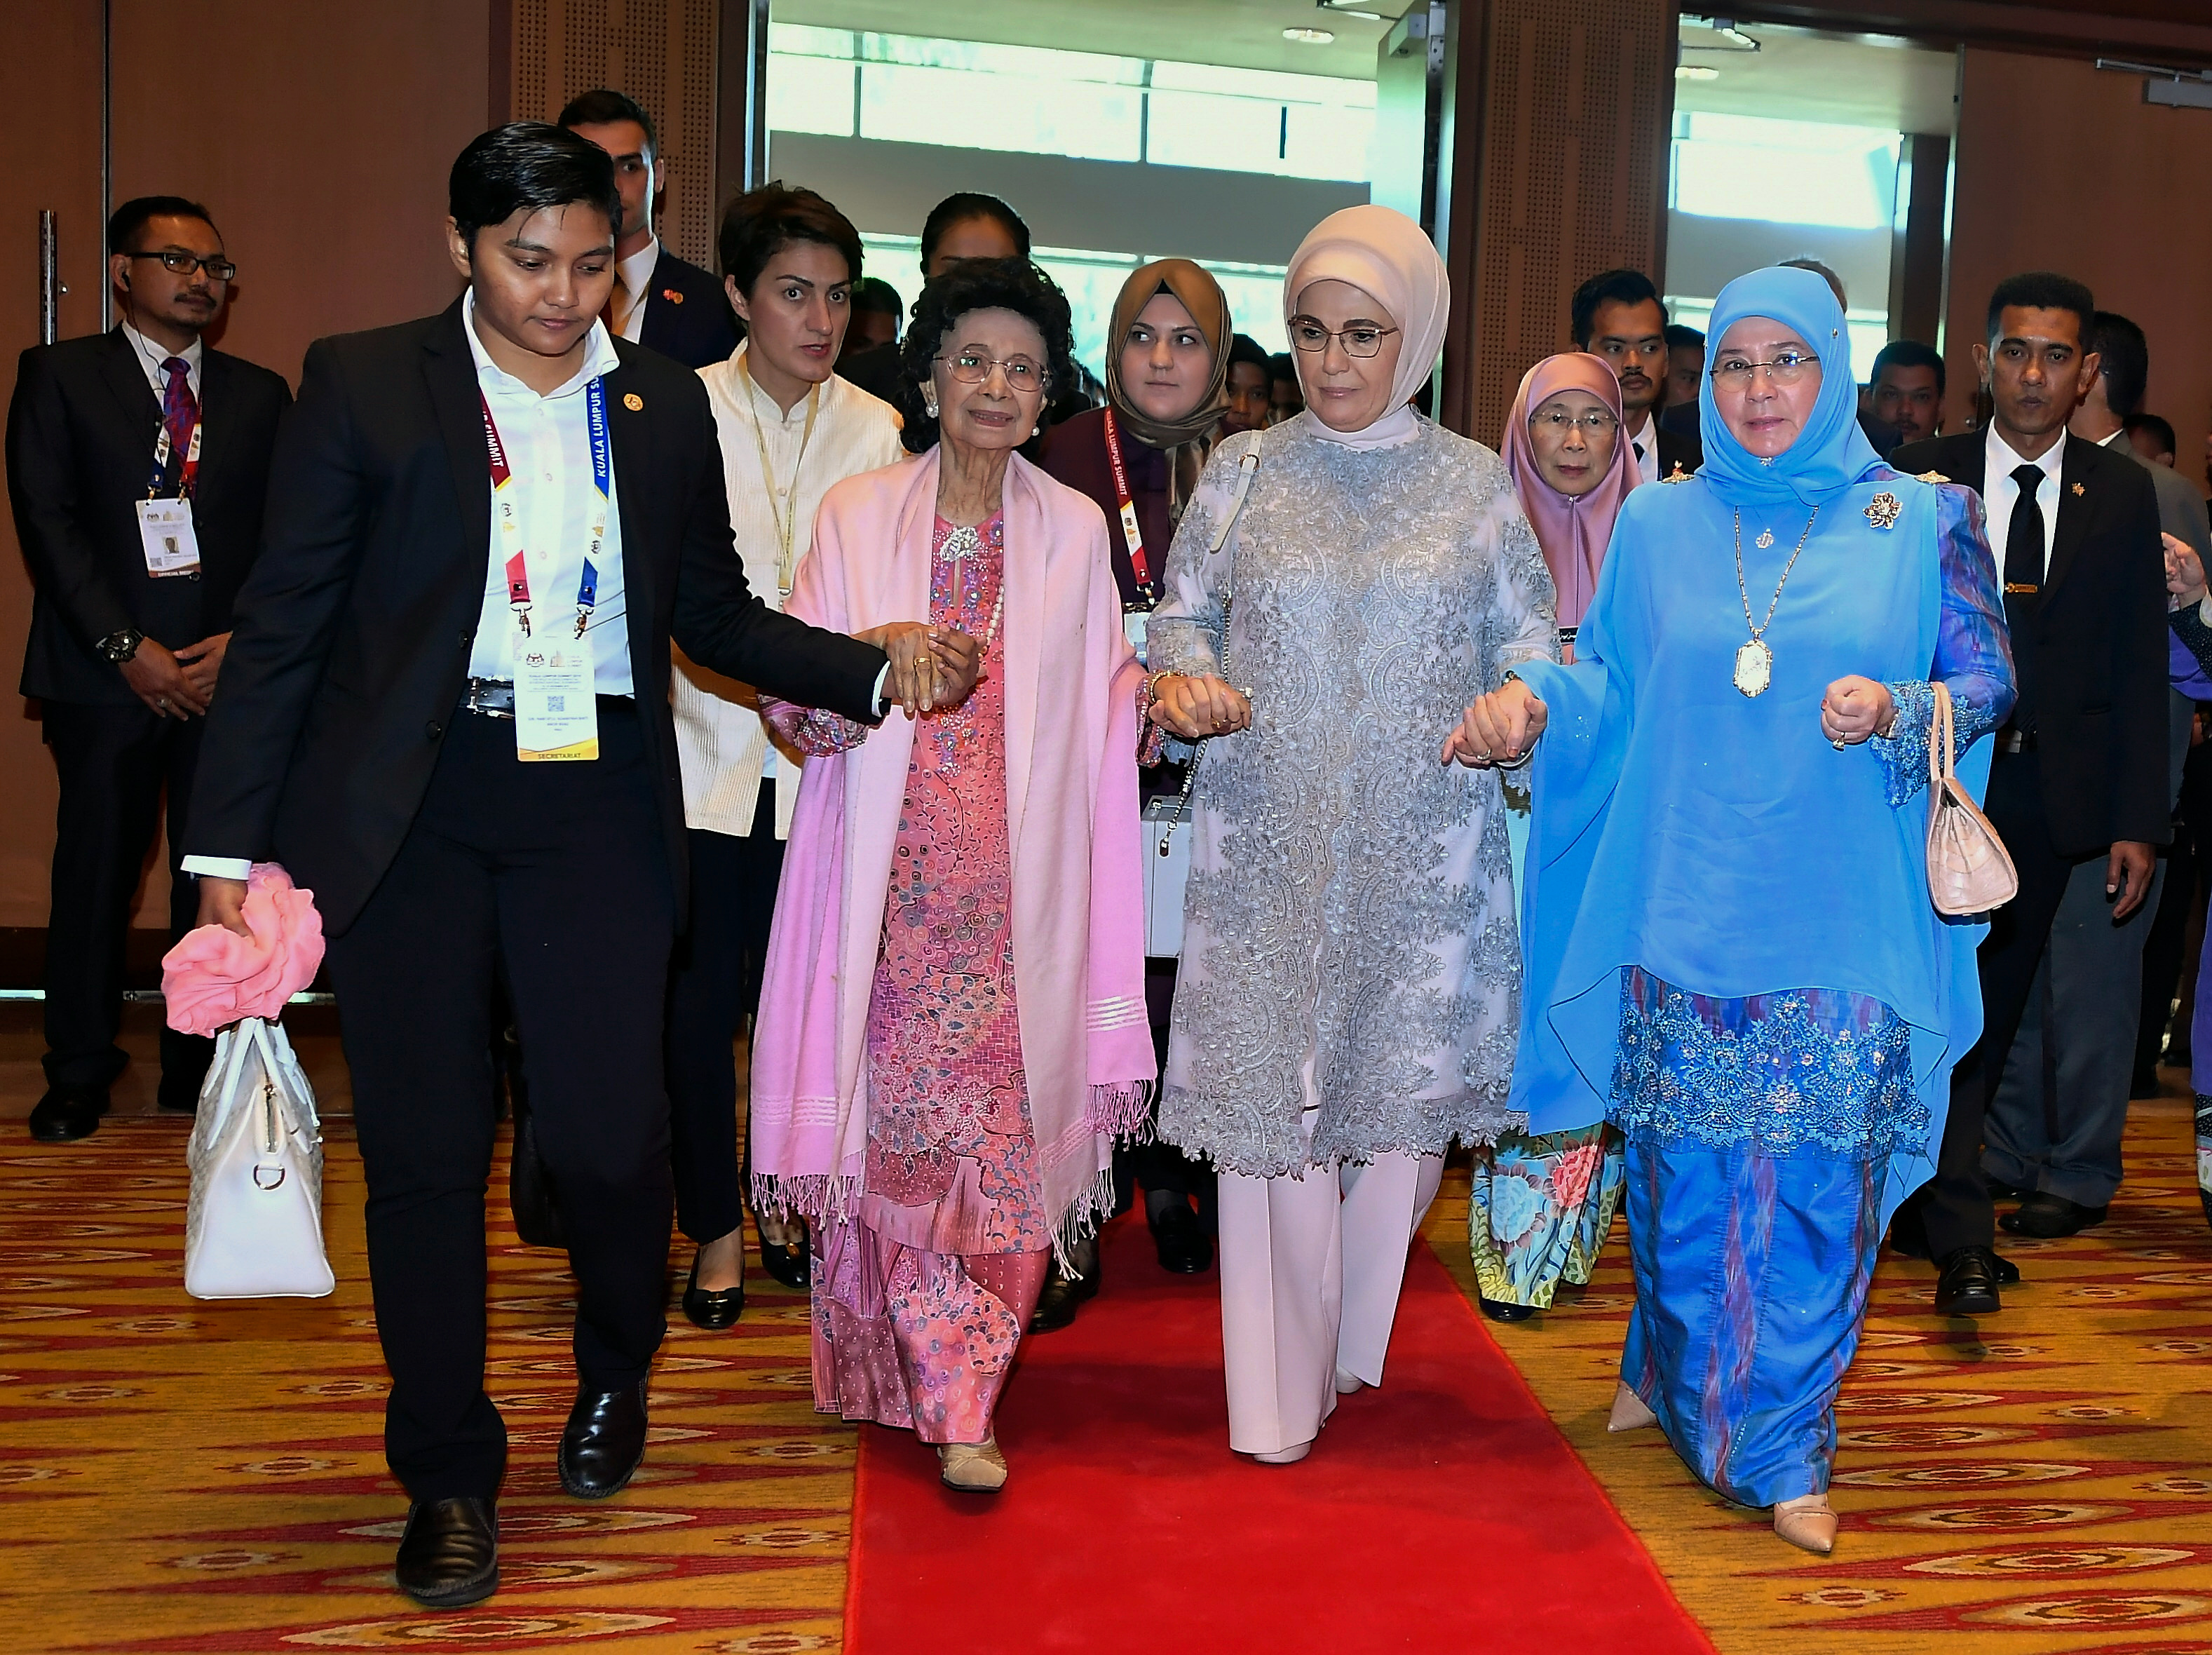 有朋自远方来，不亦乐乎。国家元首后东姑阿兹莎阿米娜（右）与首相夫人敦茜蒂哈斯玛（左二）与土耳其总统夫人伊敏情同姐妹，互相扶持走红地毯出席吉隆坡峰会开幕典礼。